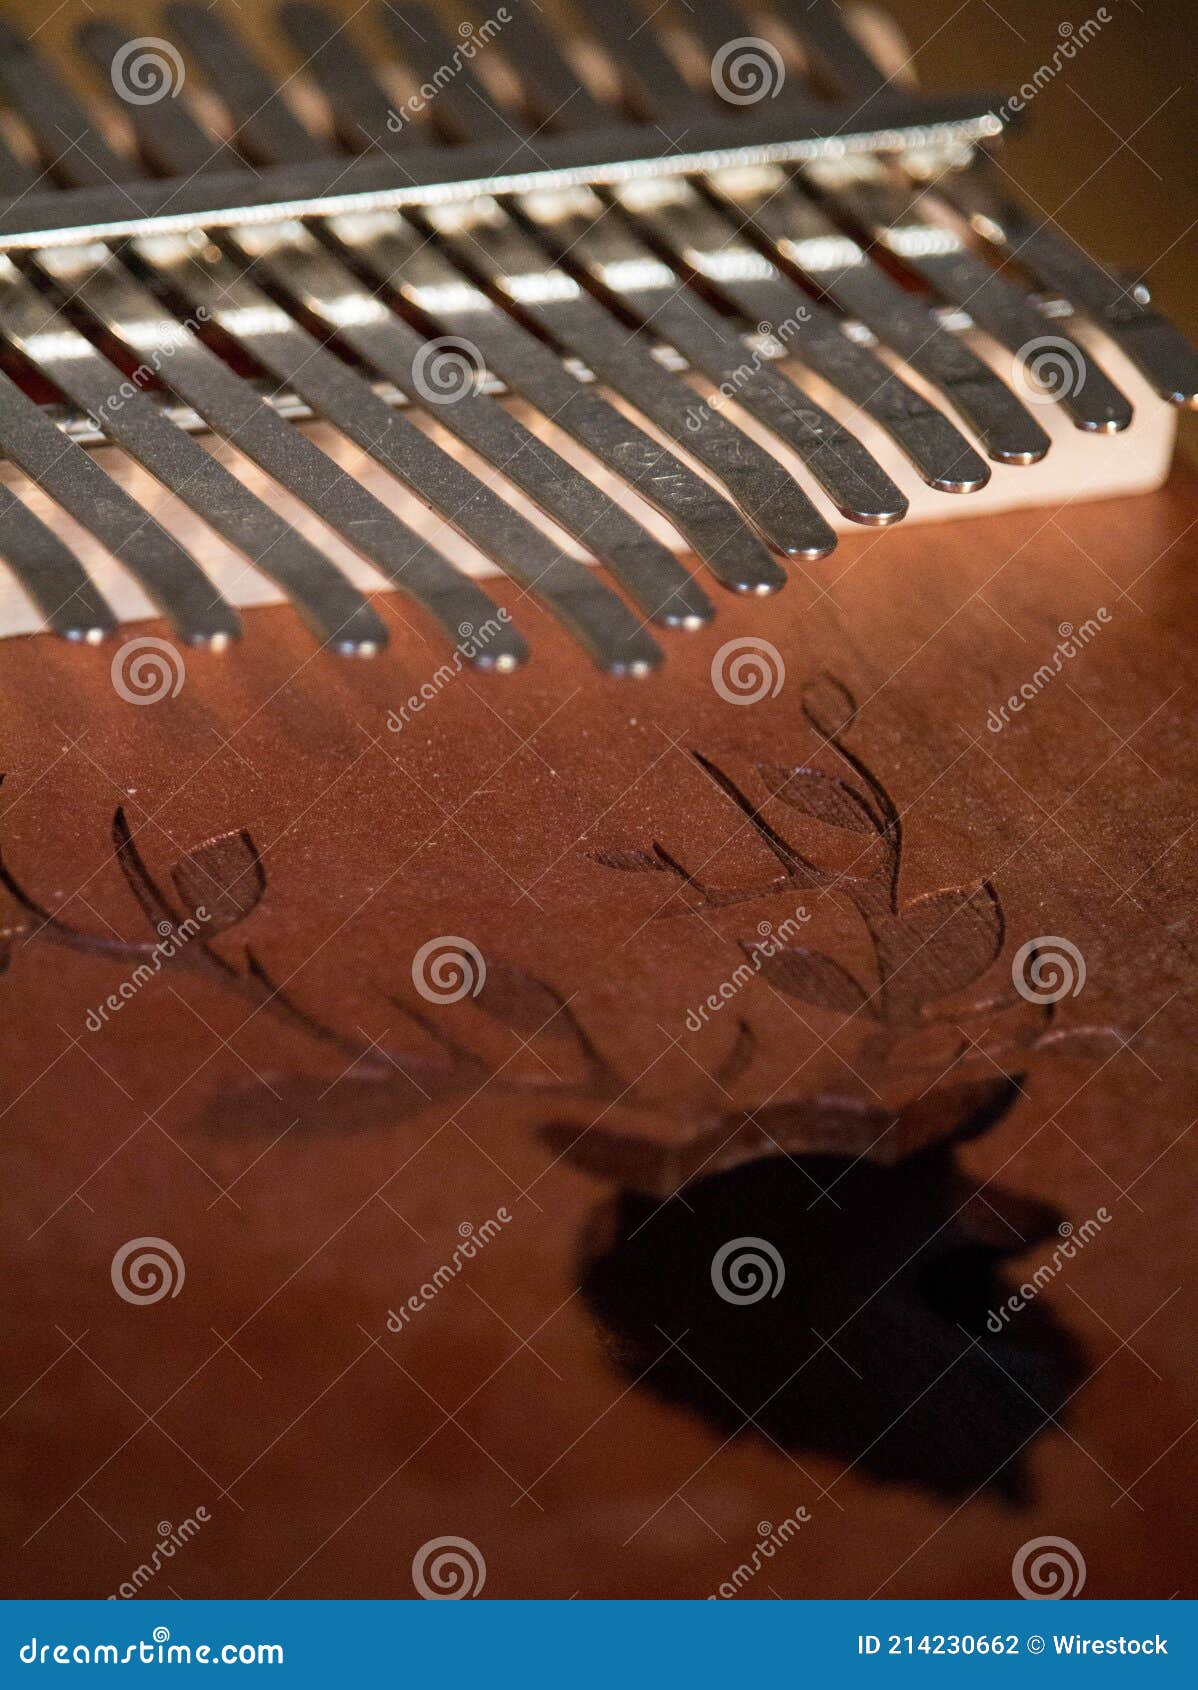 Plan Vertical D'un Piano à Pouce Kalimba Photo stock - Image du instrument,  verticale: 214230662